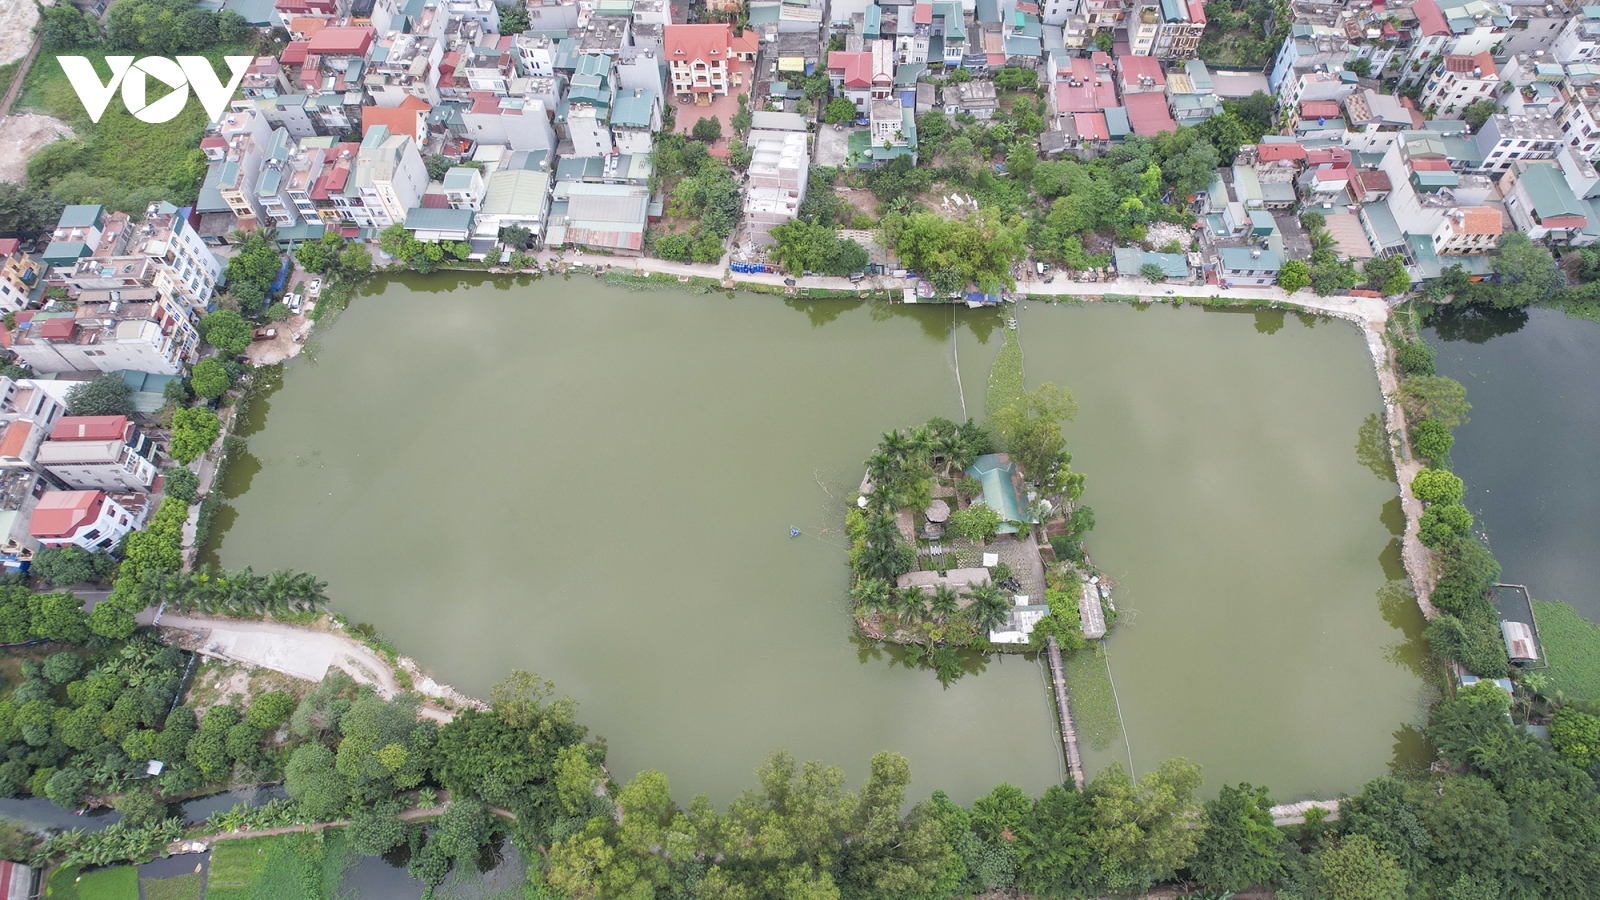 Điểm danh loạt hồ nước ở Hà Nội đứng trước nguy cơ bị san lấp để làm nhà, làm đường